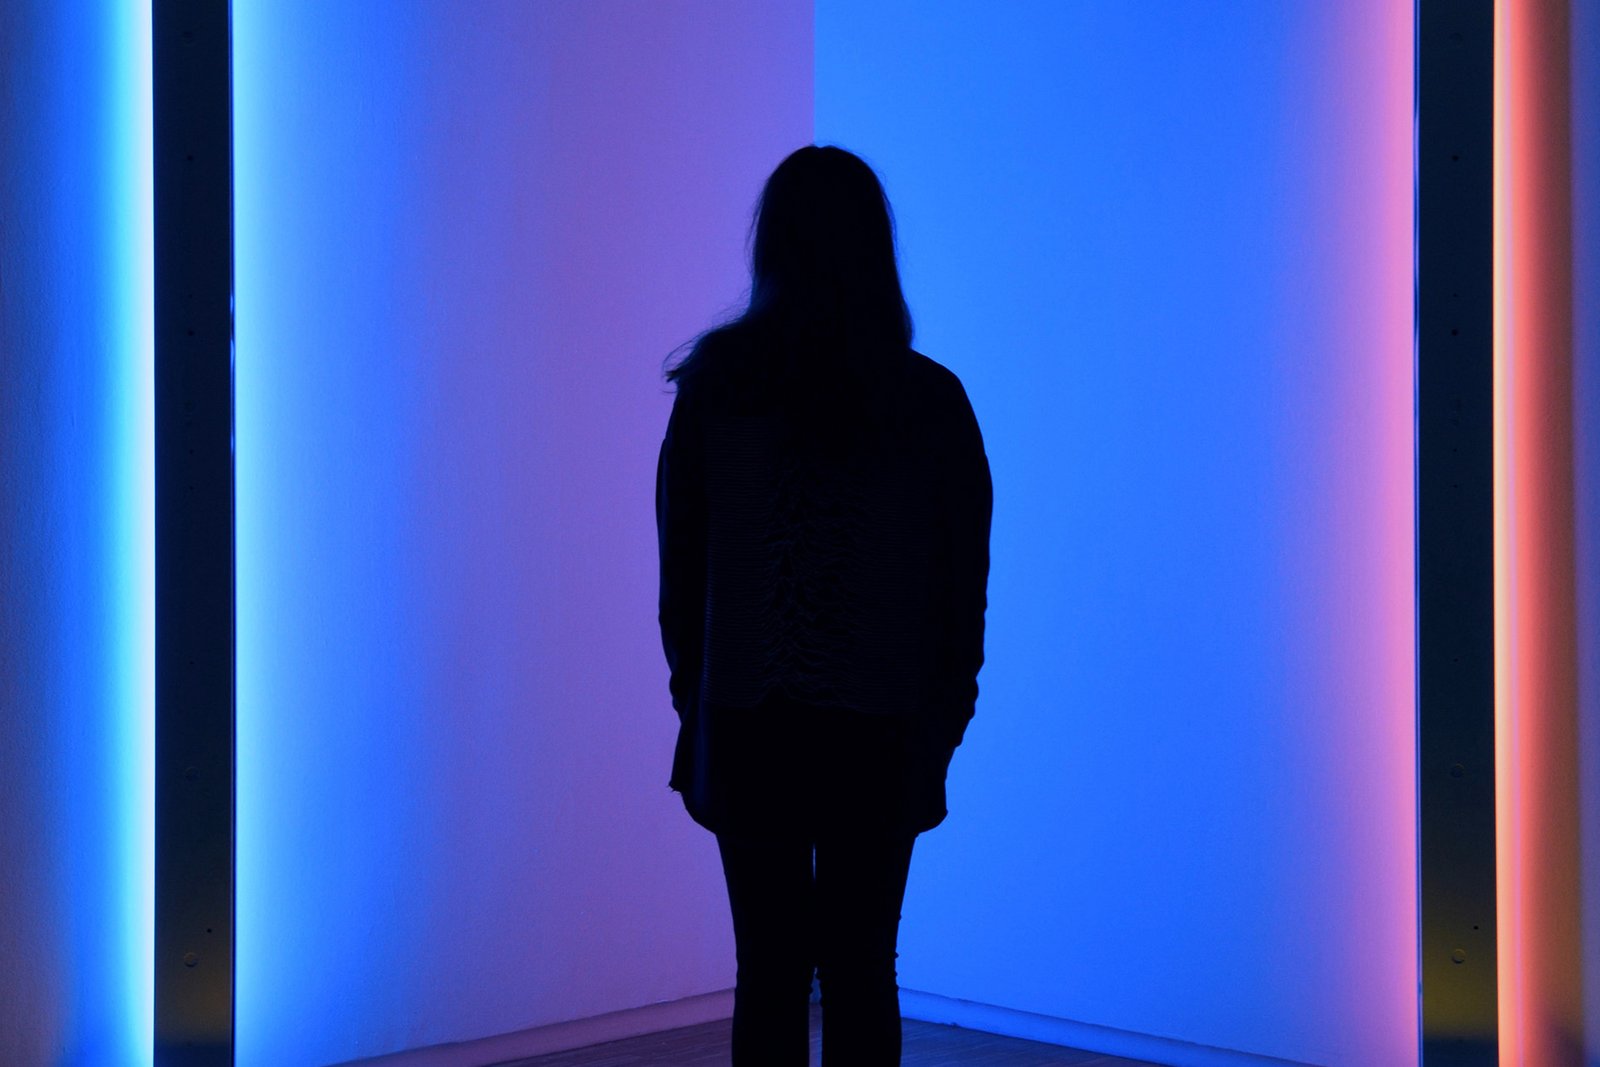 Im Halbdunkel zeigt sich die schwarze Silhouette einer jungen Frau in einer Ecke zwischen einem blauen und einem roten Lichtbündel.